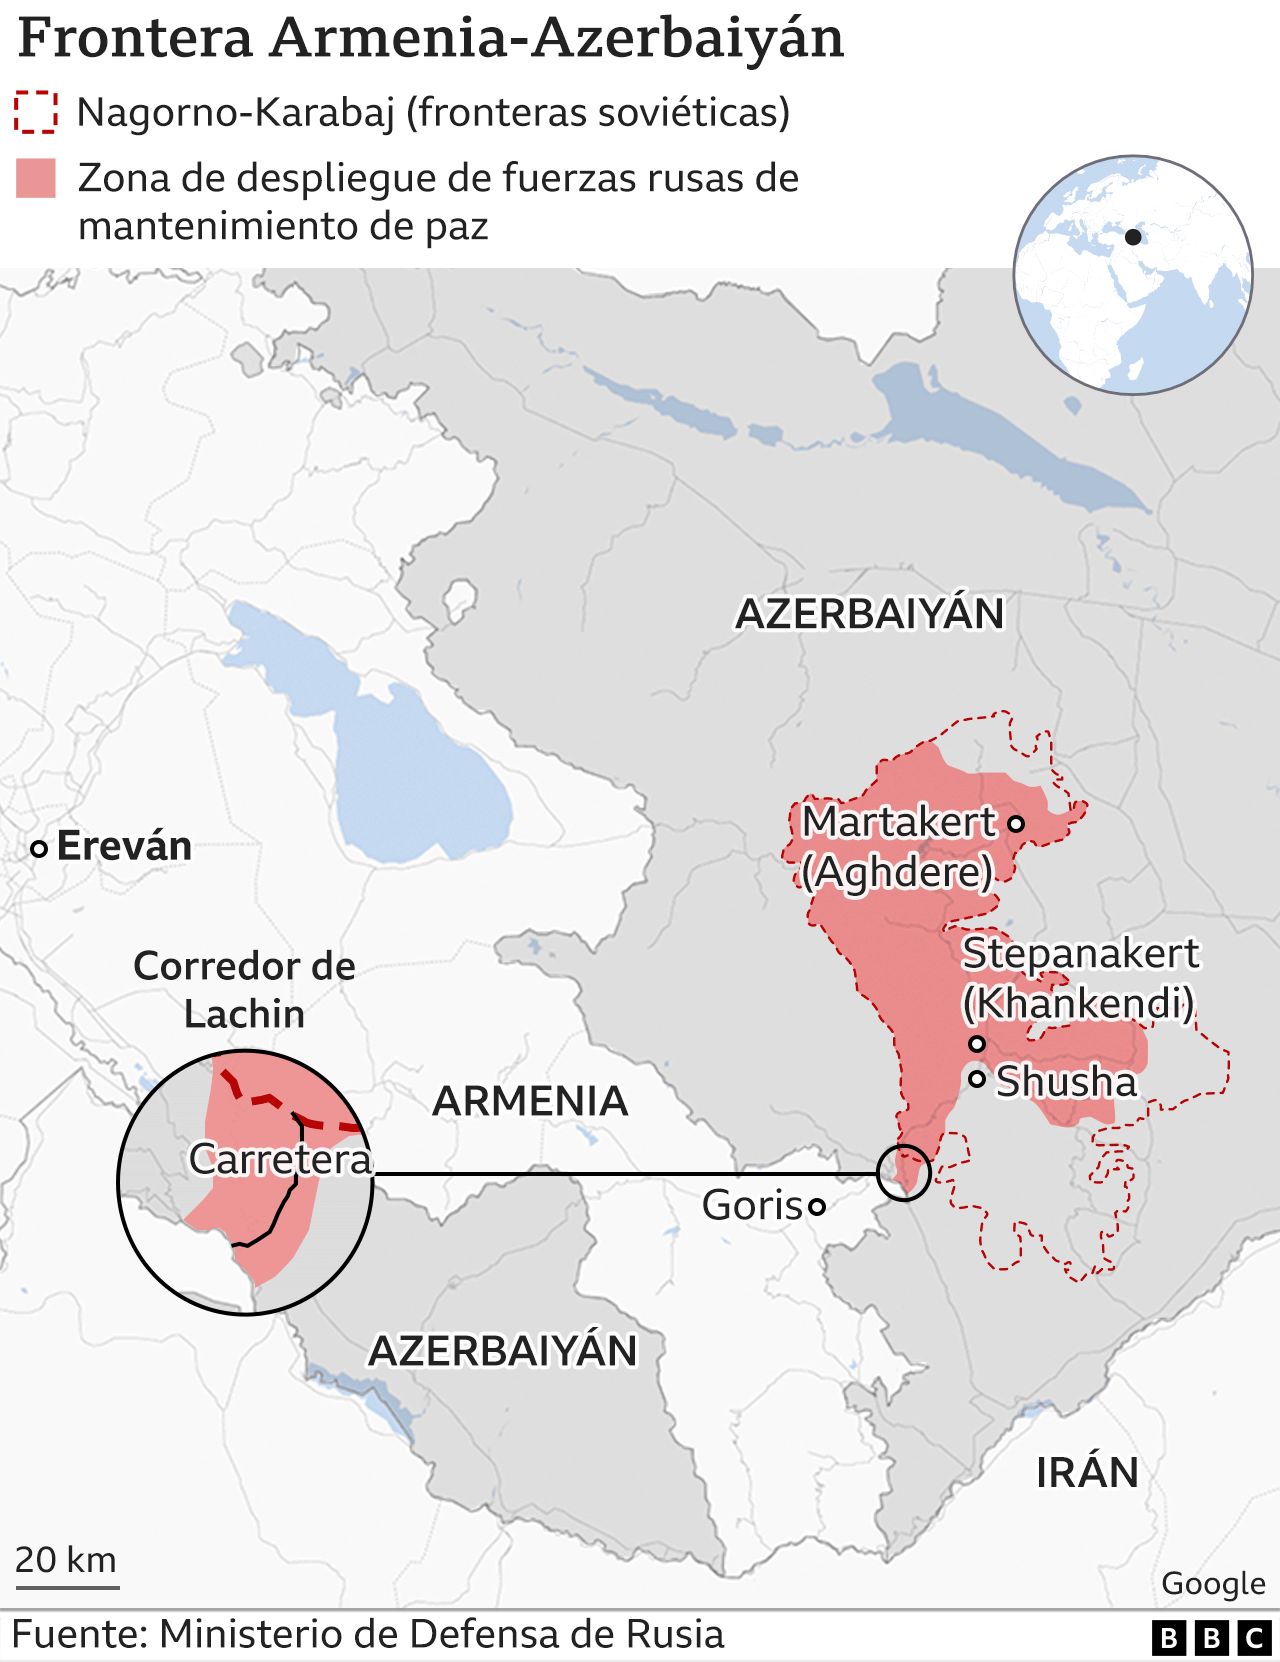 Frontera Armenia-Azerbaiyán.